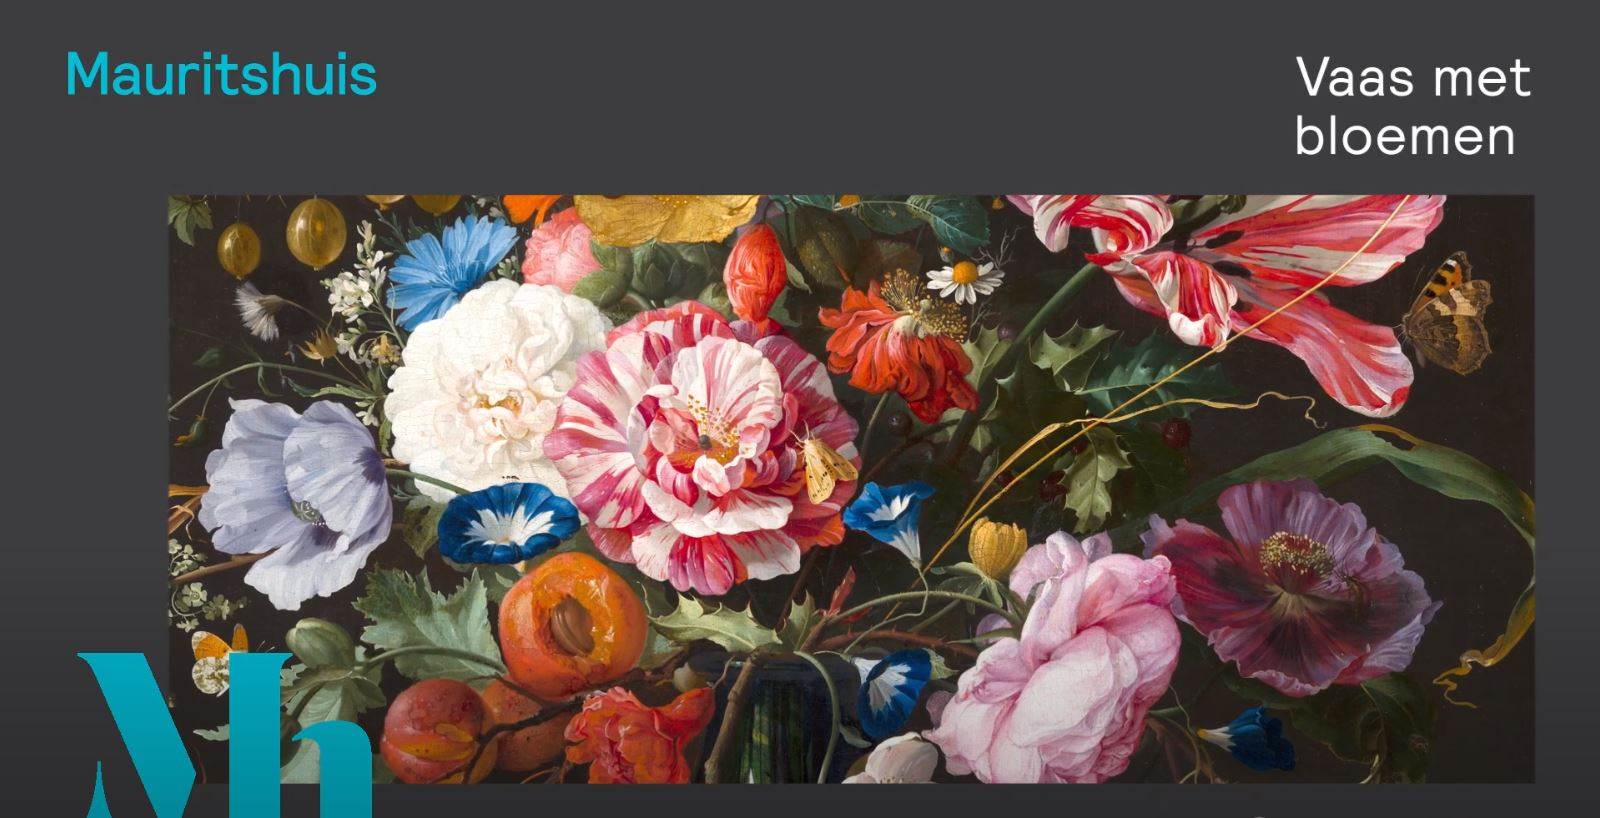 de Jan | bloemen Mauritshuis met Heem Davidsz Vaas